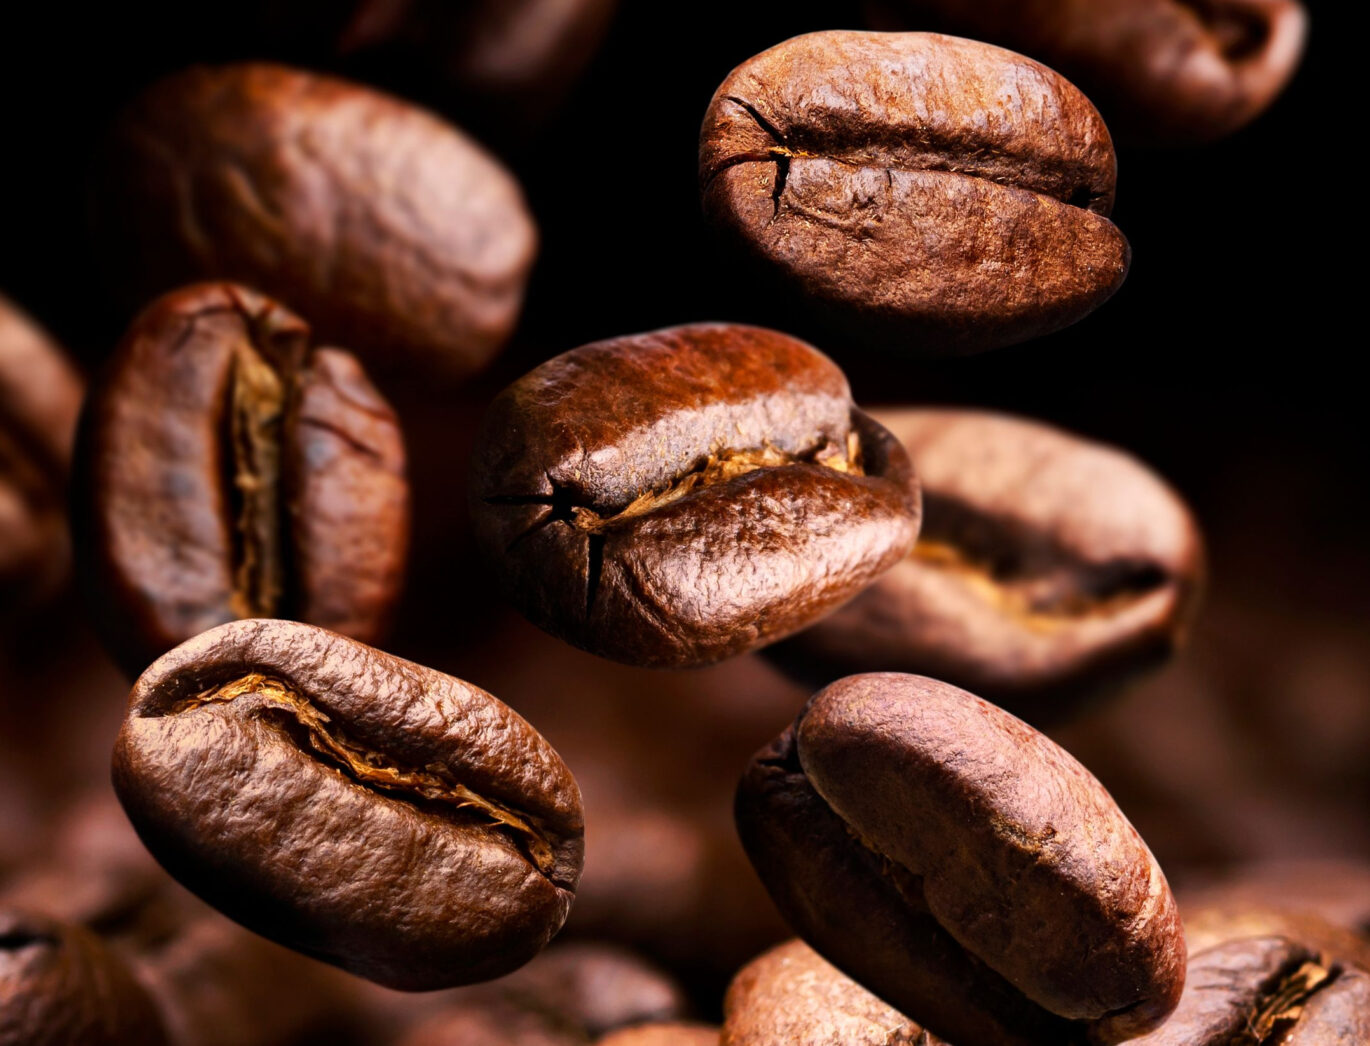 Arabica koffiebonen zijn erg geliefd. Maar welke moet je kiezen? Hier vind je de lekkerste arabica bonen